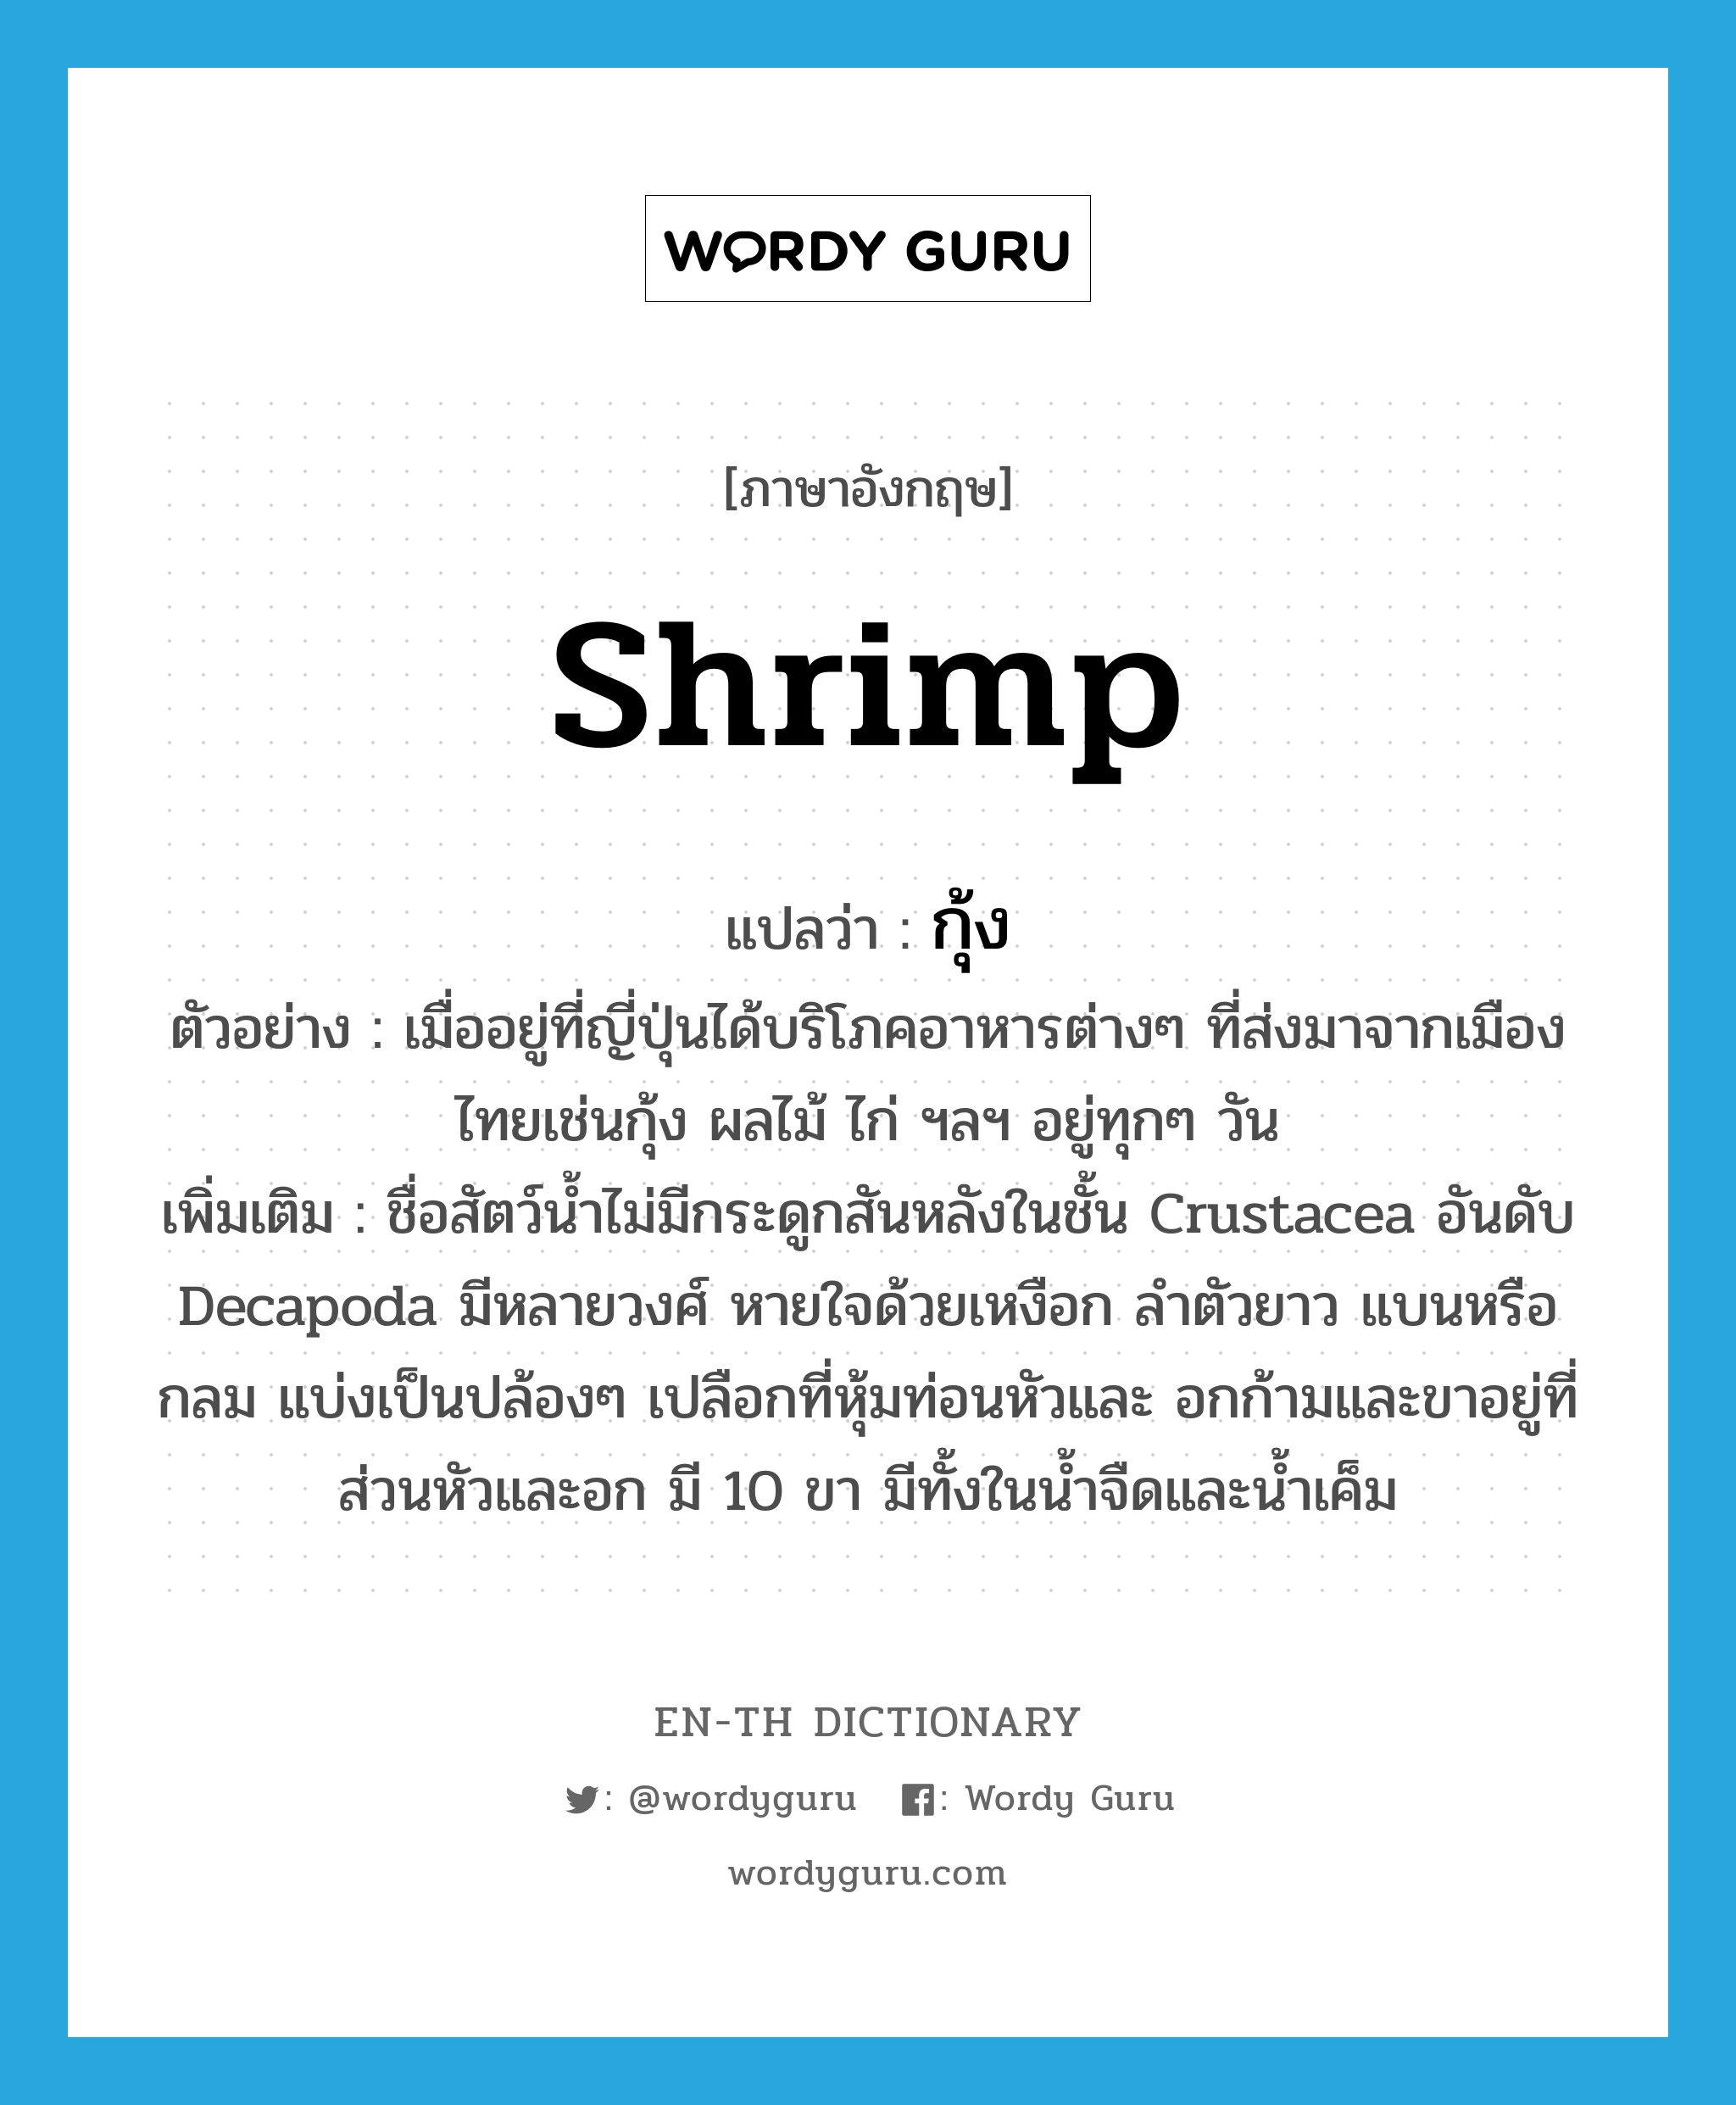 กุ้ง ภาษาอังกฤษ?, คำศัพท์ภาษาอังกฤษ กุ้ง แปลว่า shrimp ประเภท N ตัวอย่าง เมื่ออยู่ที่ญี่ปุ่นได้บริโภคอาหารต่างๆ ที่ส่งมาจากเมืองไทยเช่นกุ้ง ผลไม้ ไก่ ฯลฯ อยู่ทุกๆ วัน เพิ่มเติม ชื่อสัตว์น้ำไม่มีกระดูกสันหลังในชั้น Crustacea อันดับ Decapoda มีหลายวงศ์ หายใจด้วยเหงือก ลำตัวยาว แบนหรือกลม แบ่งเป็นปล้องๆ เปลือกที่หุ้มท่อนหัวและ อกก้ามและขาอยู่ที่ส่วนหัวและอก มี 10 ขา มีทั้งในน้ำจืดและน้ำเค็ม หมวด N